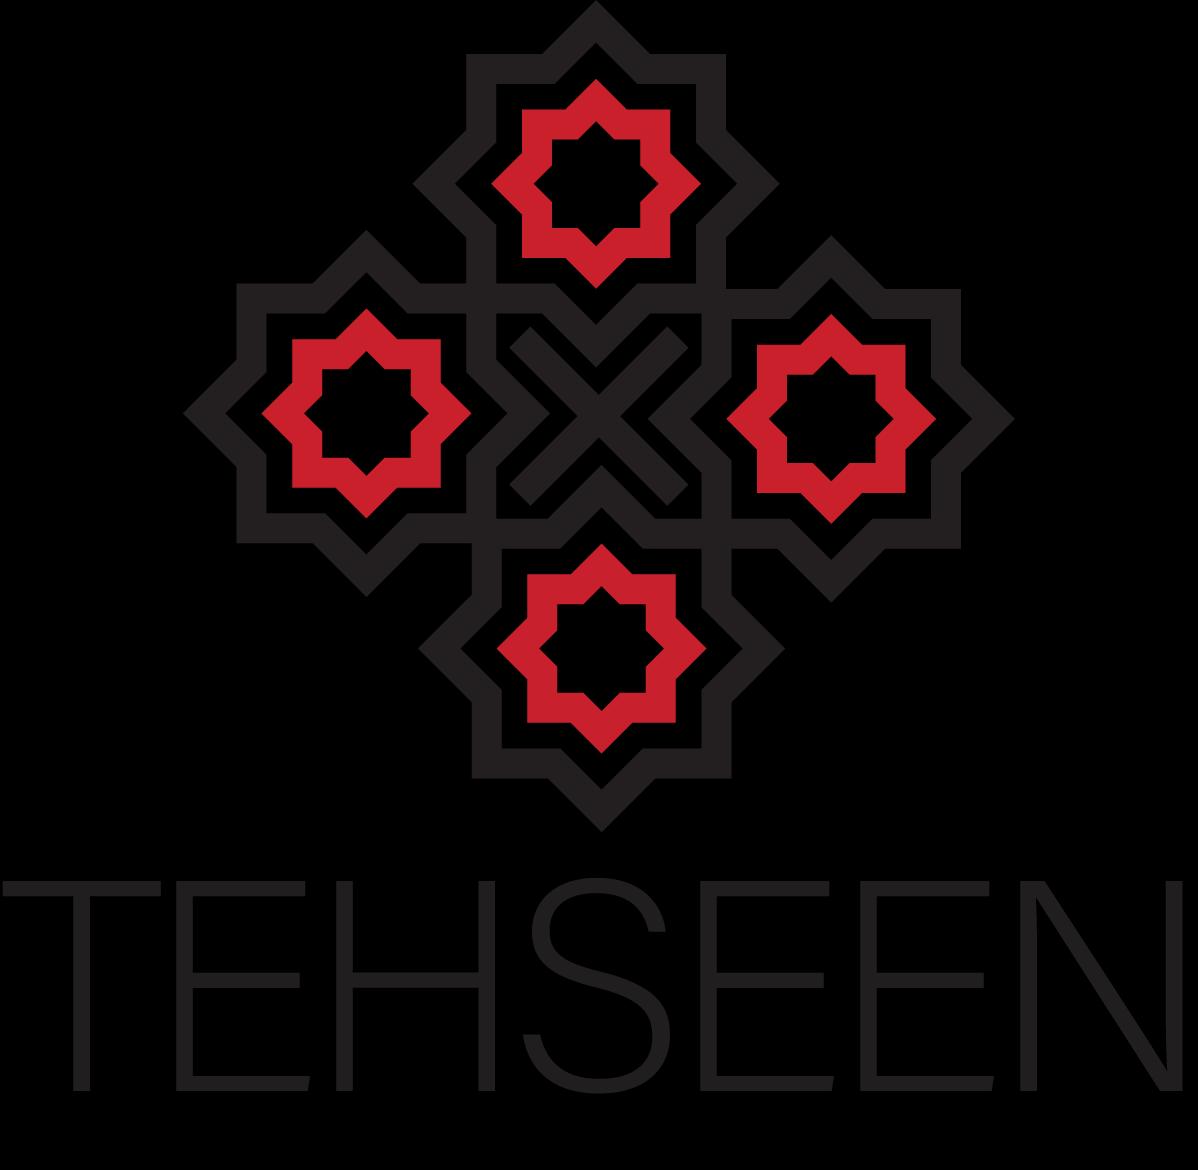 Studio Tehseen - Clothing by Tehseen Studio